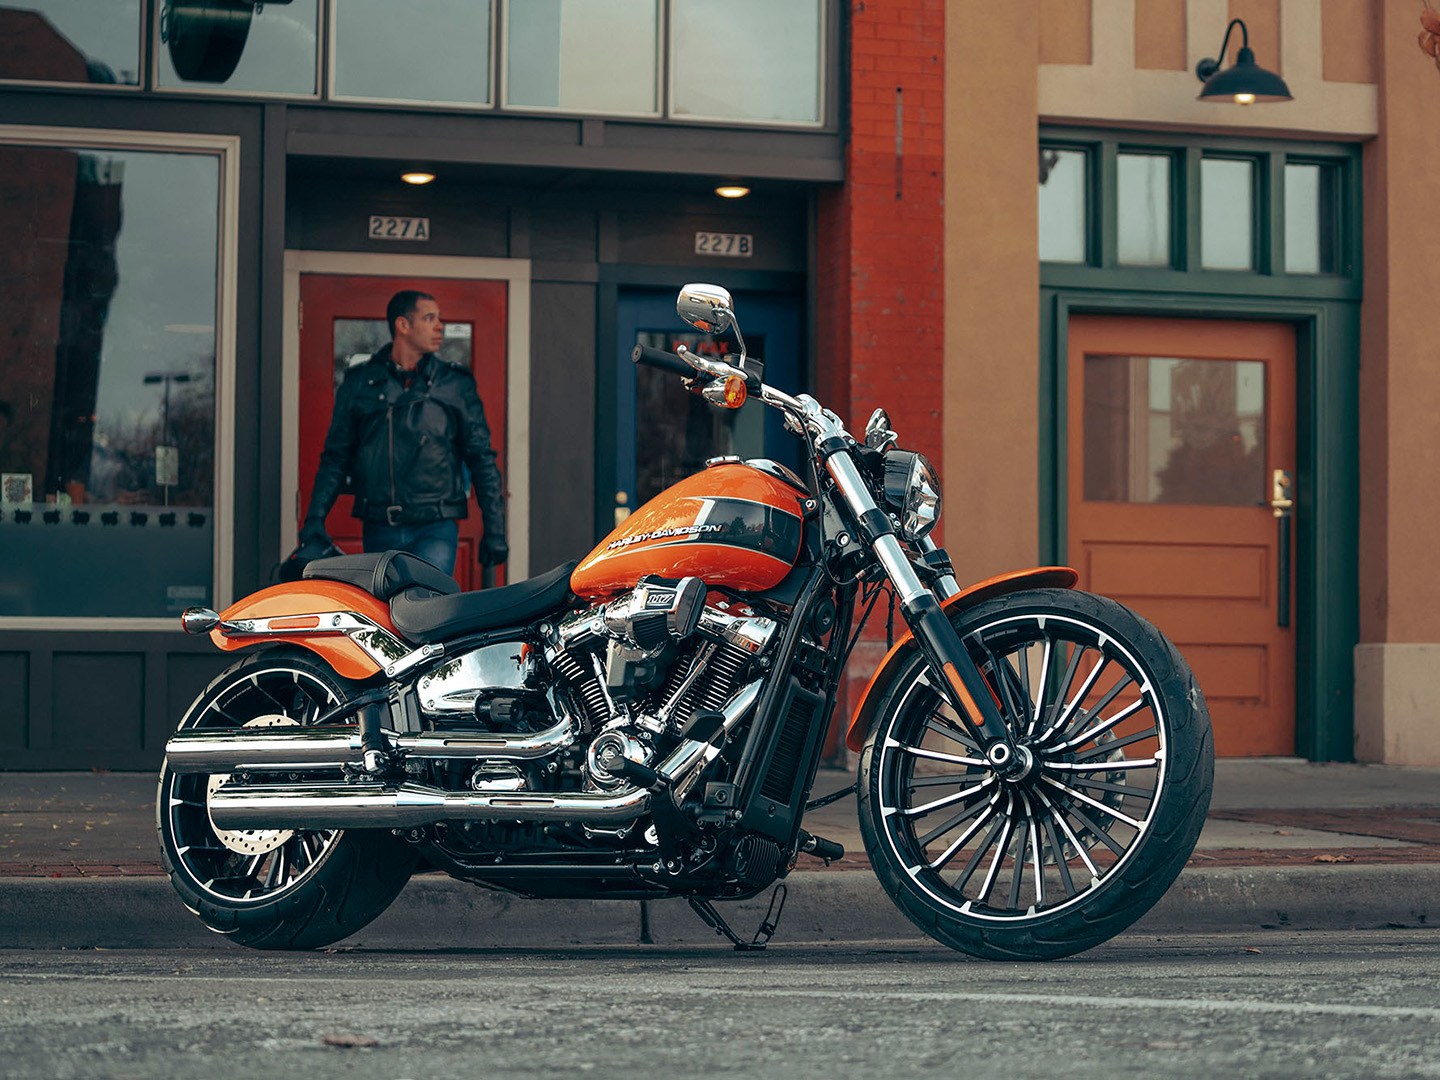 2023 Harley-Davidson Breakout® in Broadalbin, New York - Photo 4